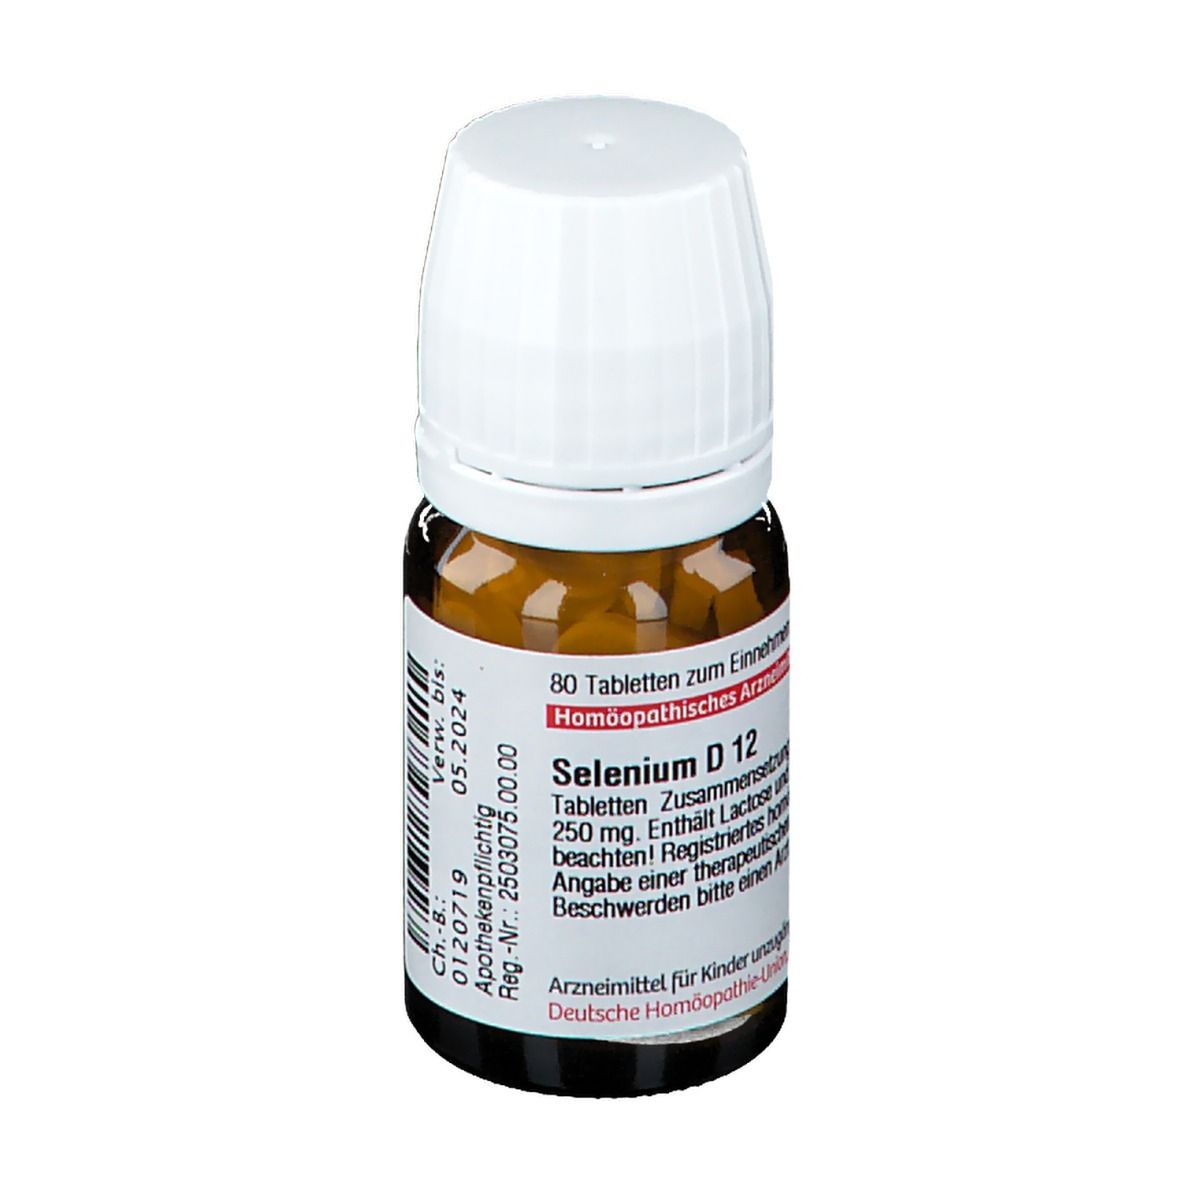 DHU Selenium D12